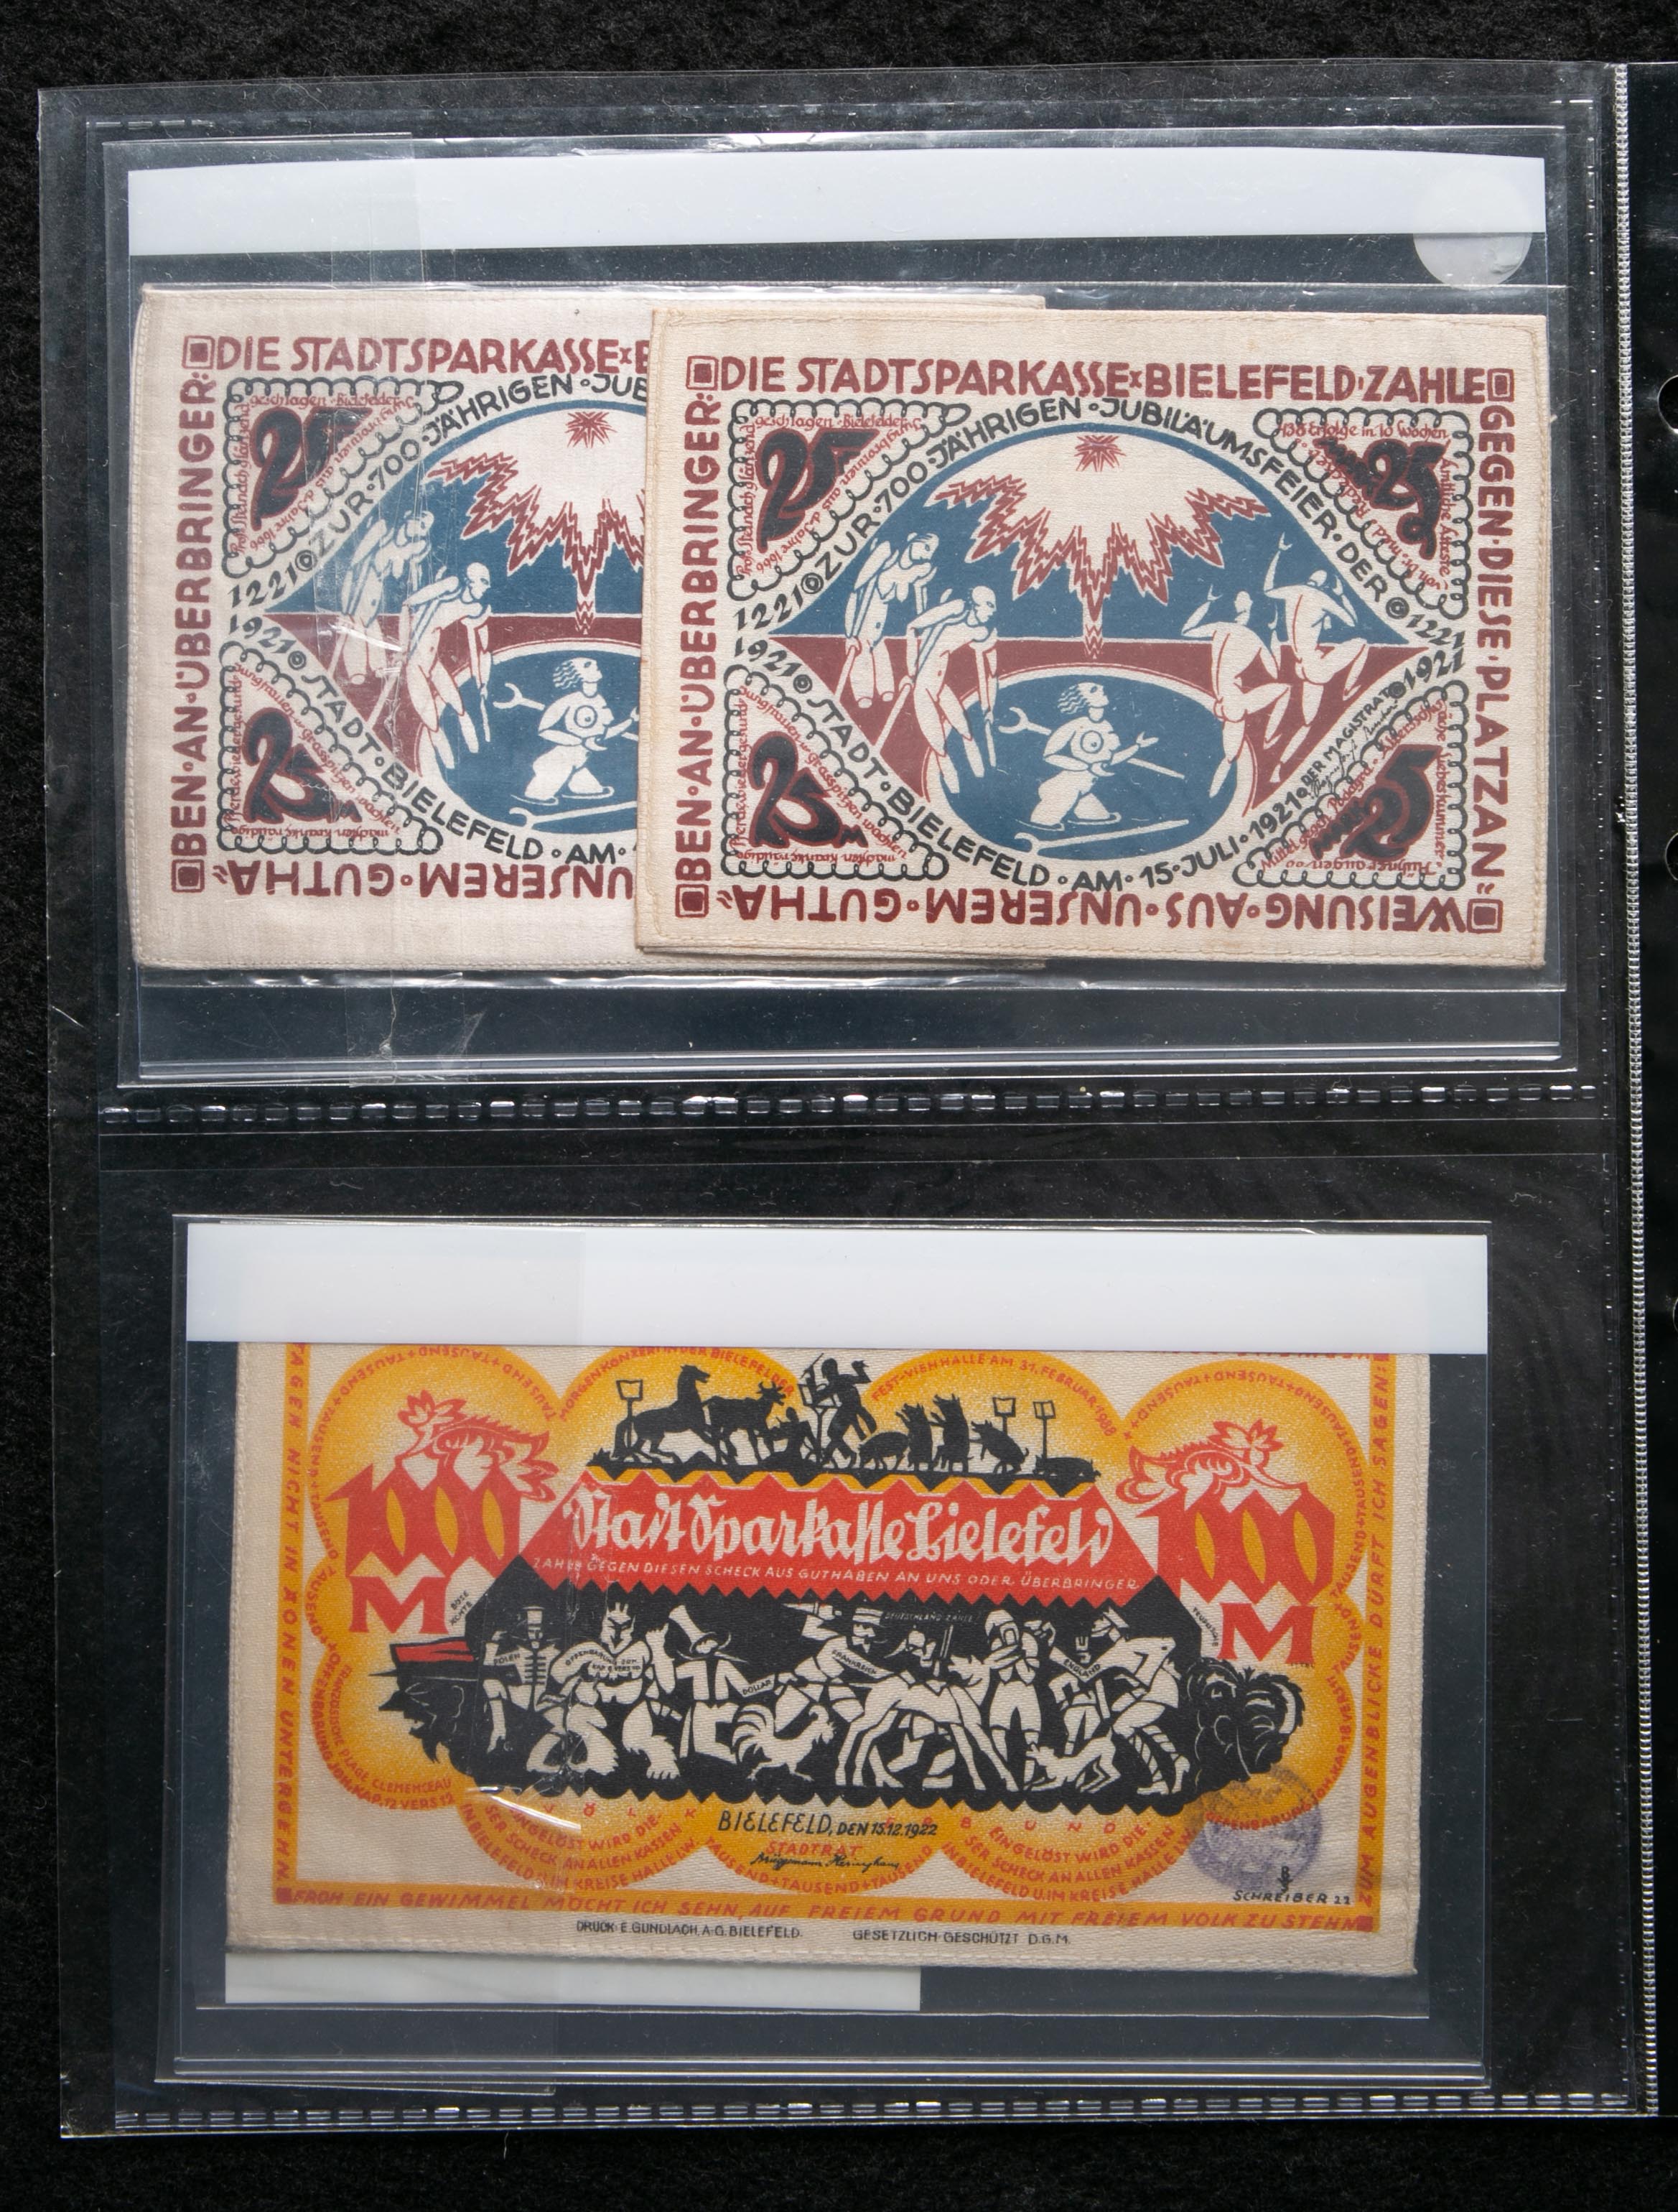 貨幣博物館 | GERMANY ドイツ ハイパーインフレ紙幣 ノートゲルト紙幣 および 絹幣 各種 計約29枚 第一次世界大戦後のインフレ 期に作られた高額札